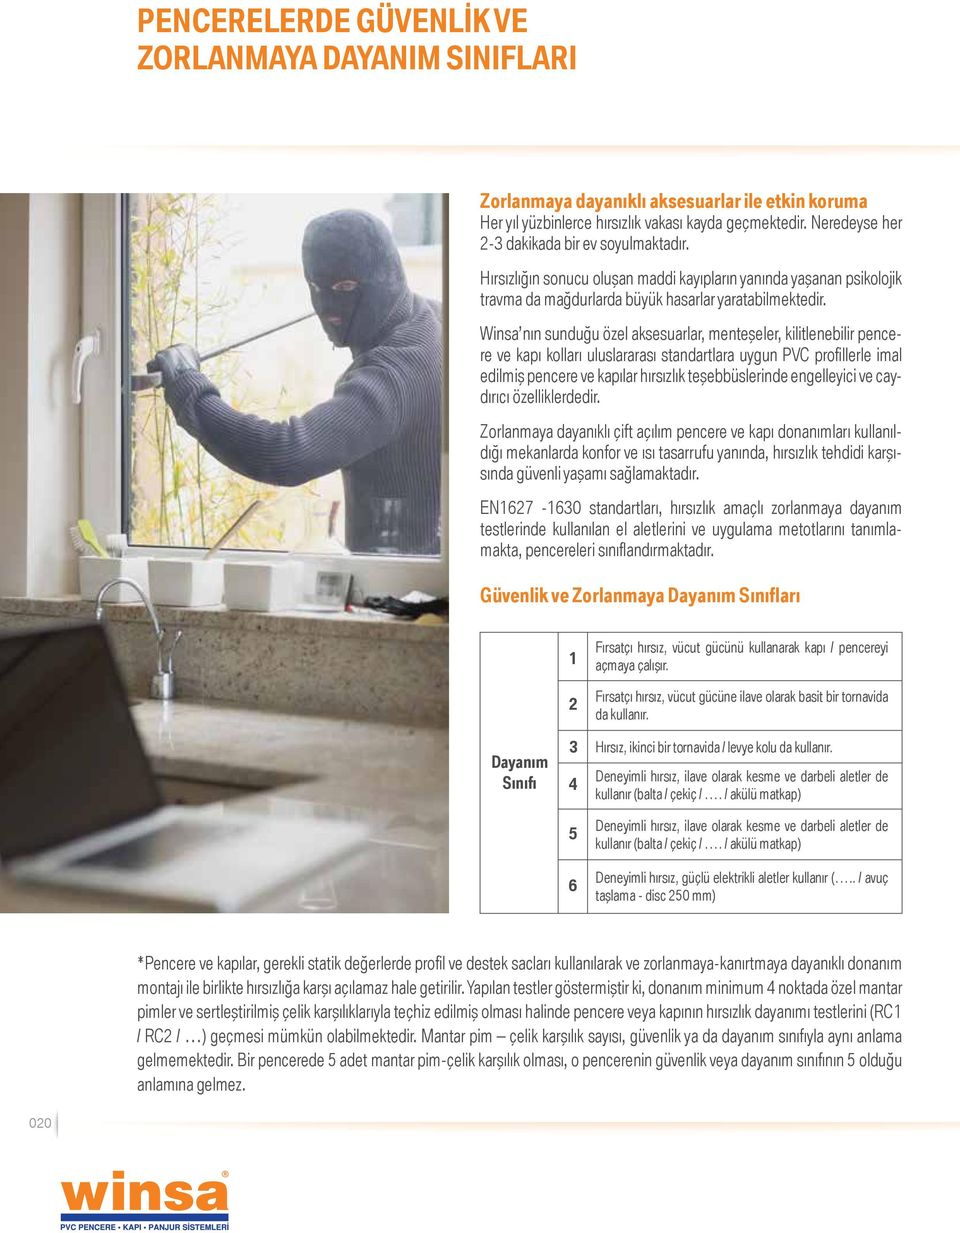 Winsa nın sunduğu özel aksesuarlar, menteşeler, kilitlenebilir pencere ve kapı kolları uluslararası standartlara uygun PVC profillerle imal edilmiş pencere ve kapılar hırsızlık teşebbüslerinde